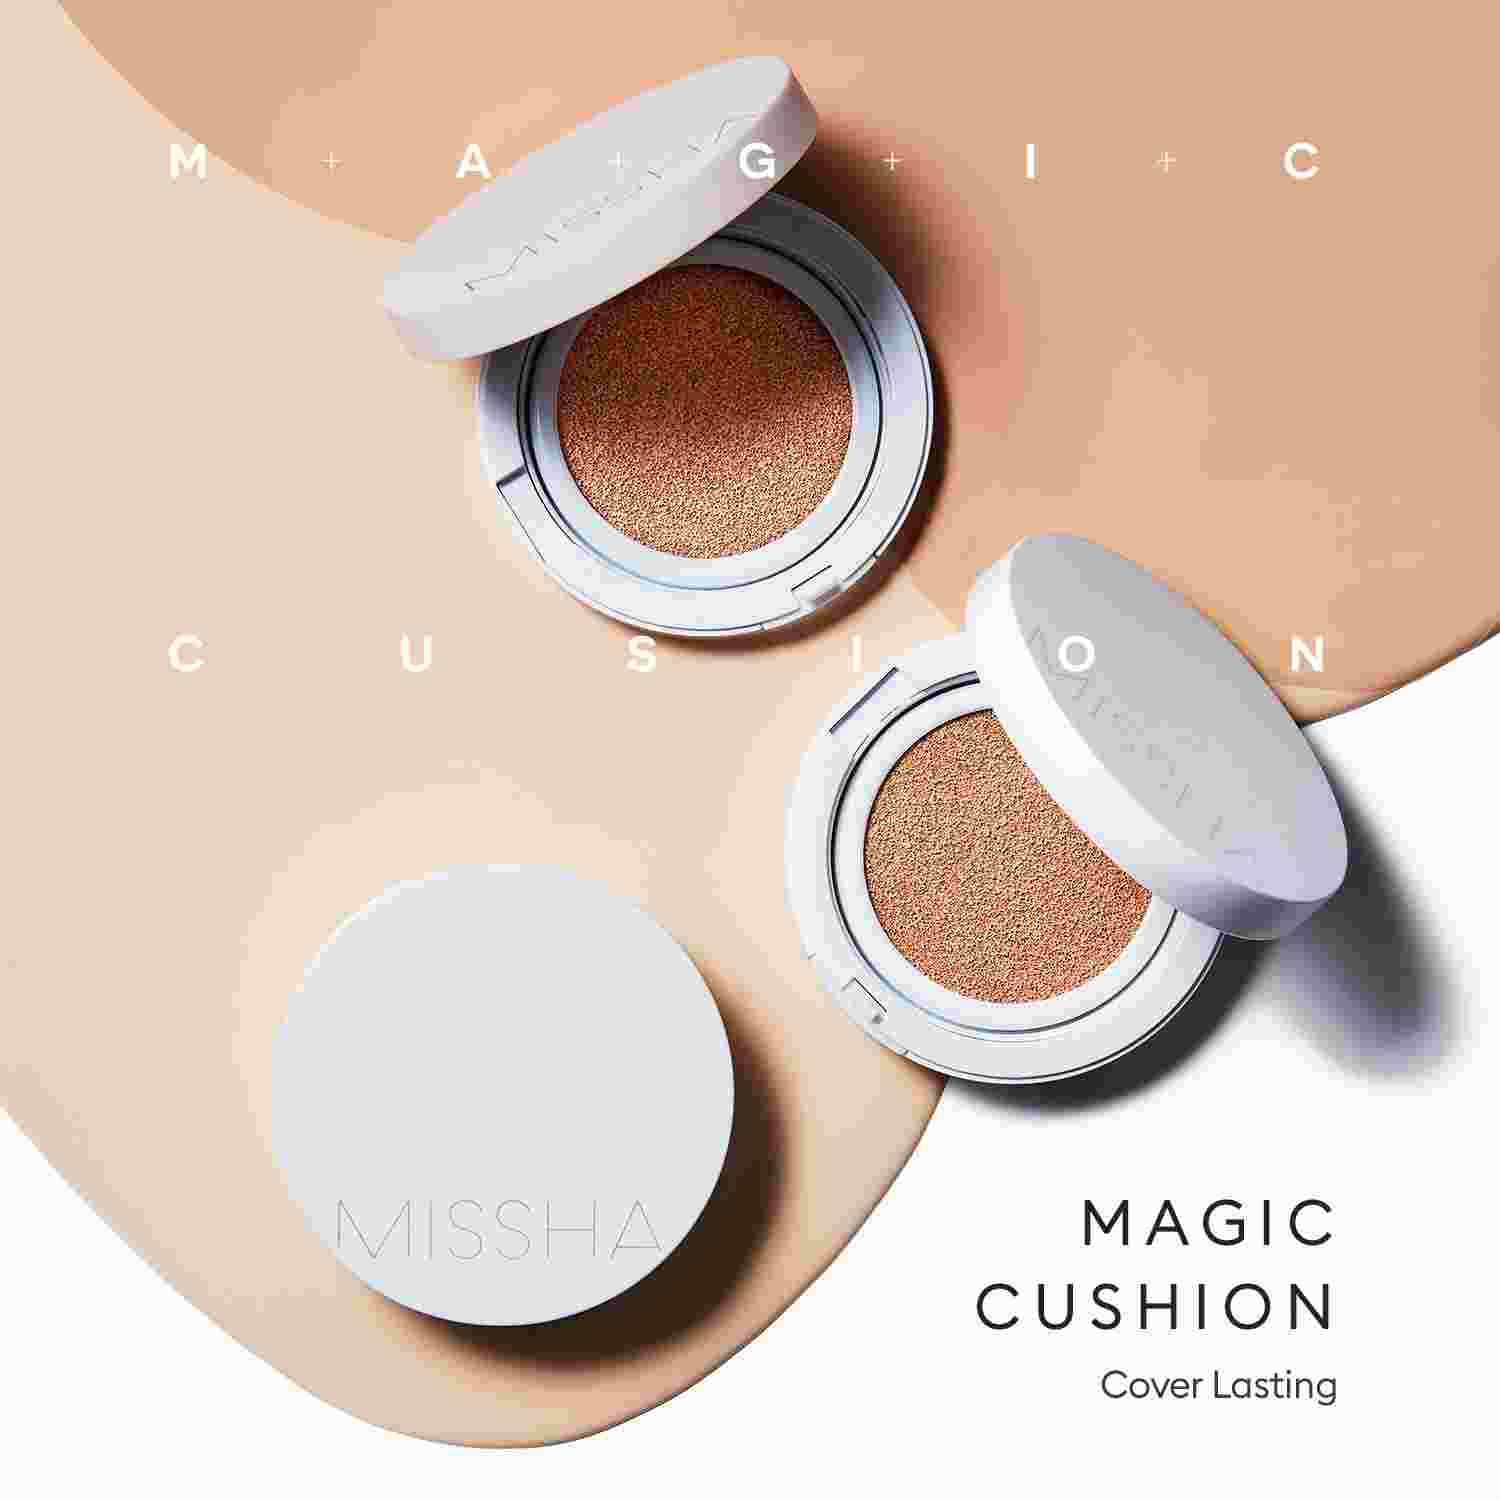 Missha Magic Cushion Cover Lasting #21 LIGHT BEIGE